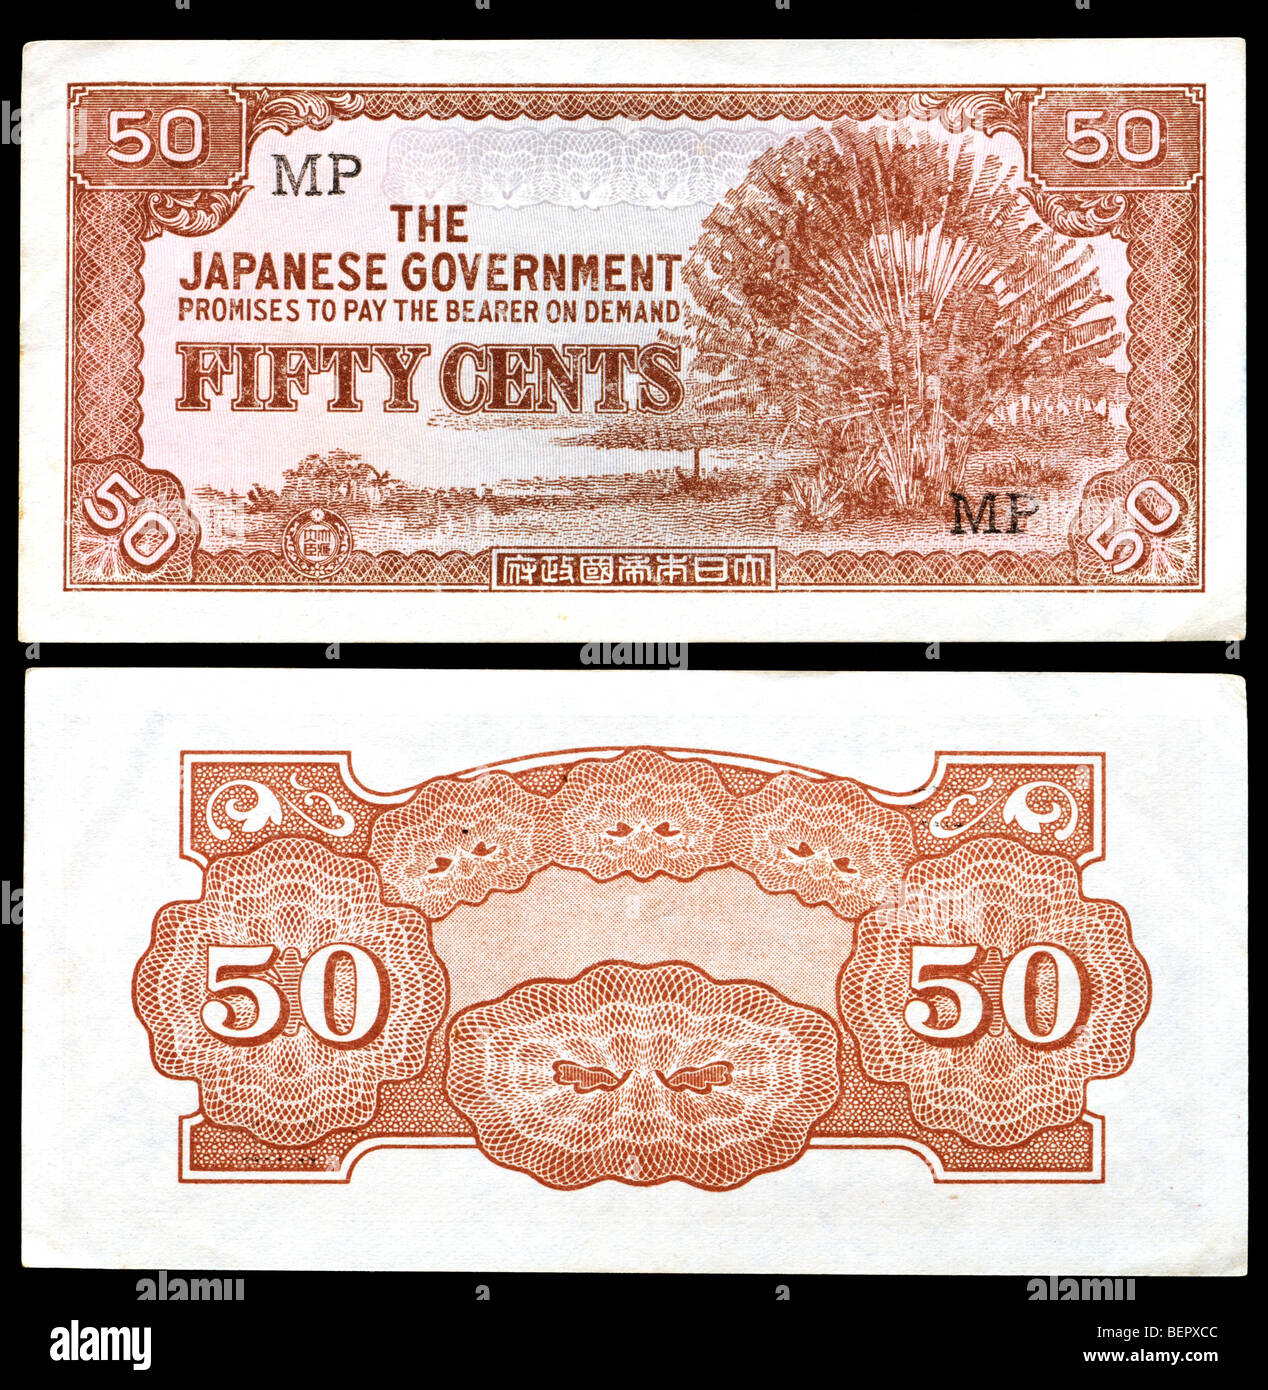 50 Cent-Banknote herausgegeben von der japanischen Regierung während der japanischen Besetzung von Malaya 1942-1945. "Banane Geld" Stockfoto